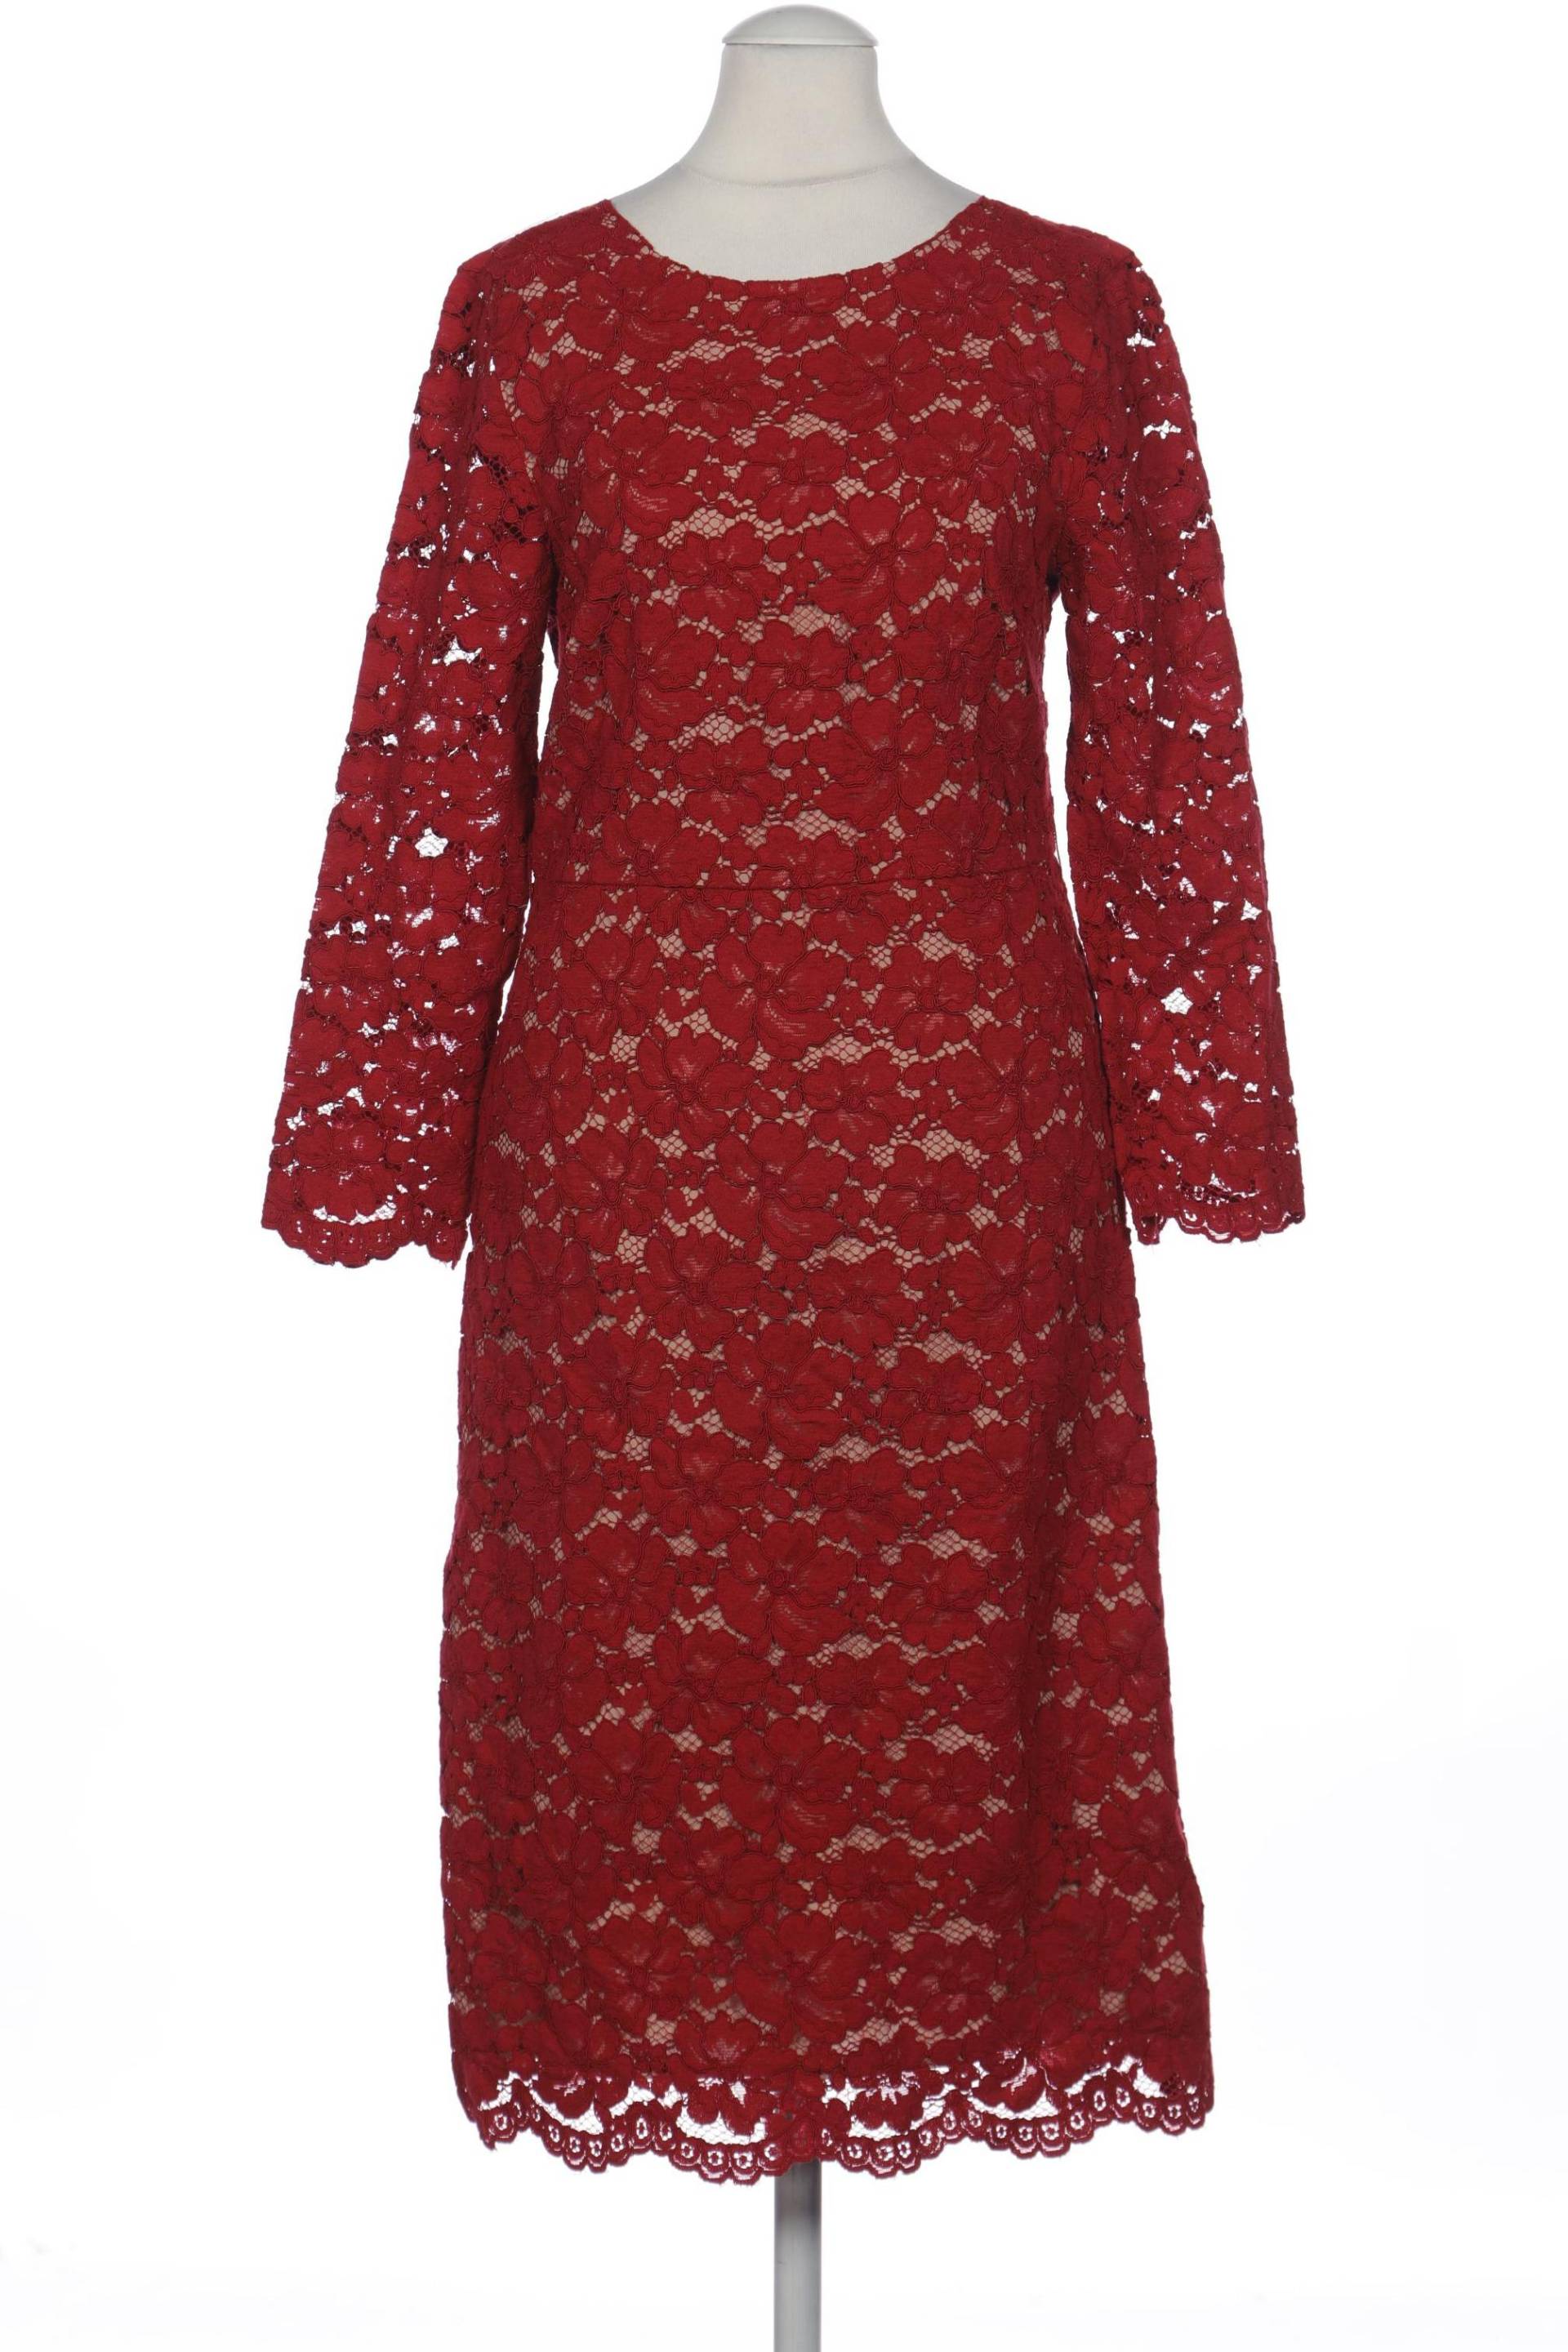 Hallhuber Damen Kleid, rot, Gr. 34 von Hallhuber